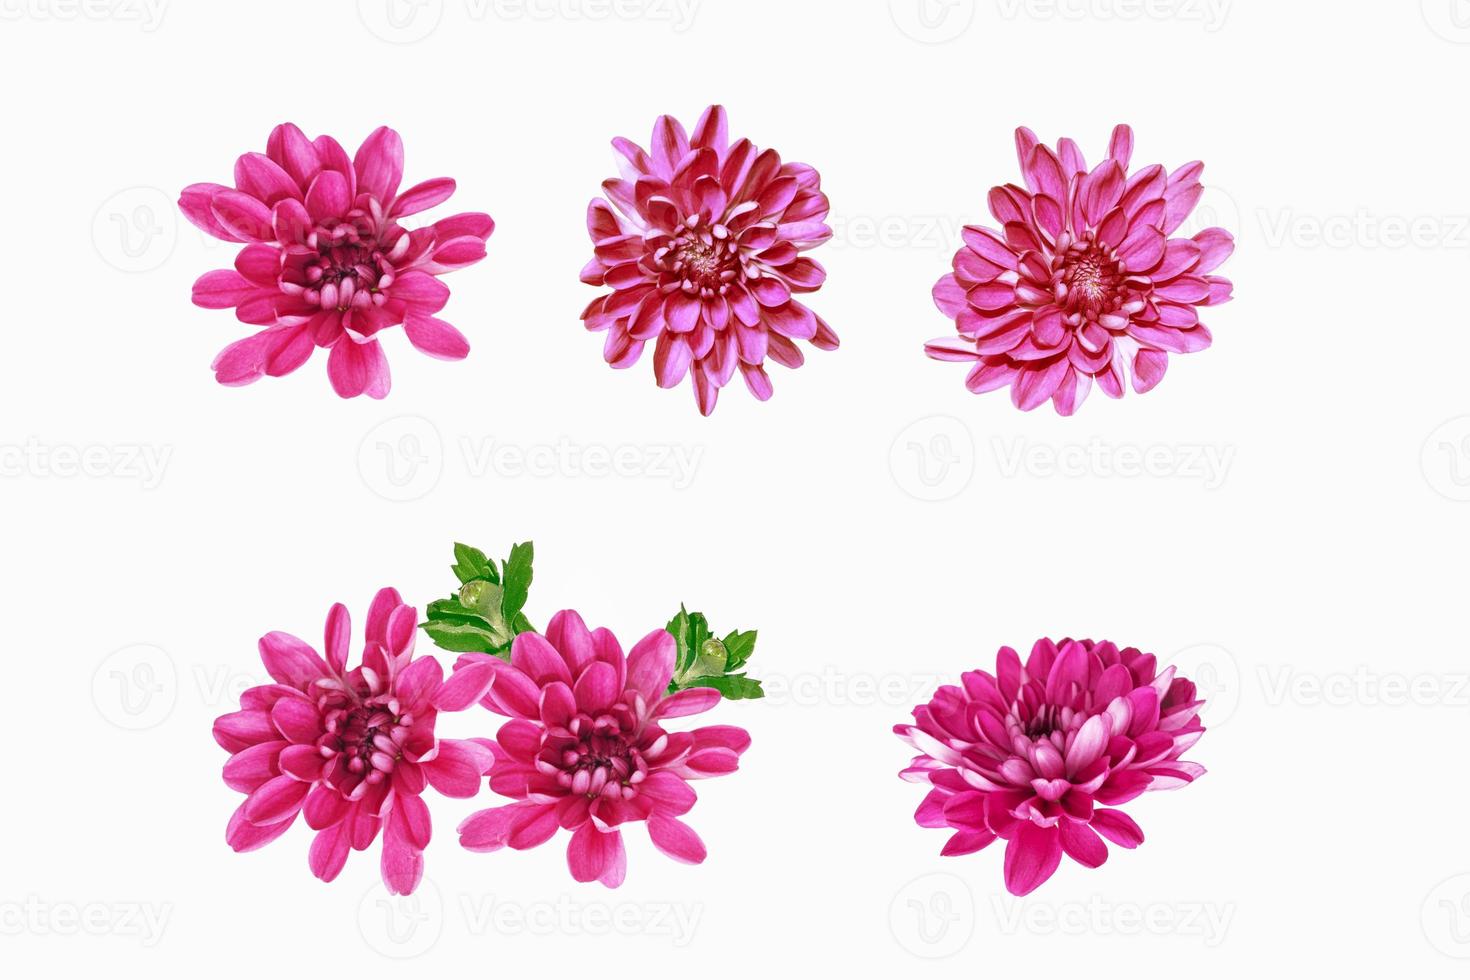 fiori autunnali colorati di crisantemo foto